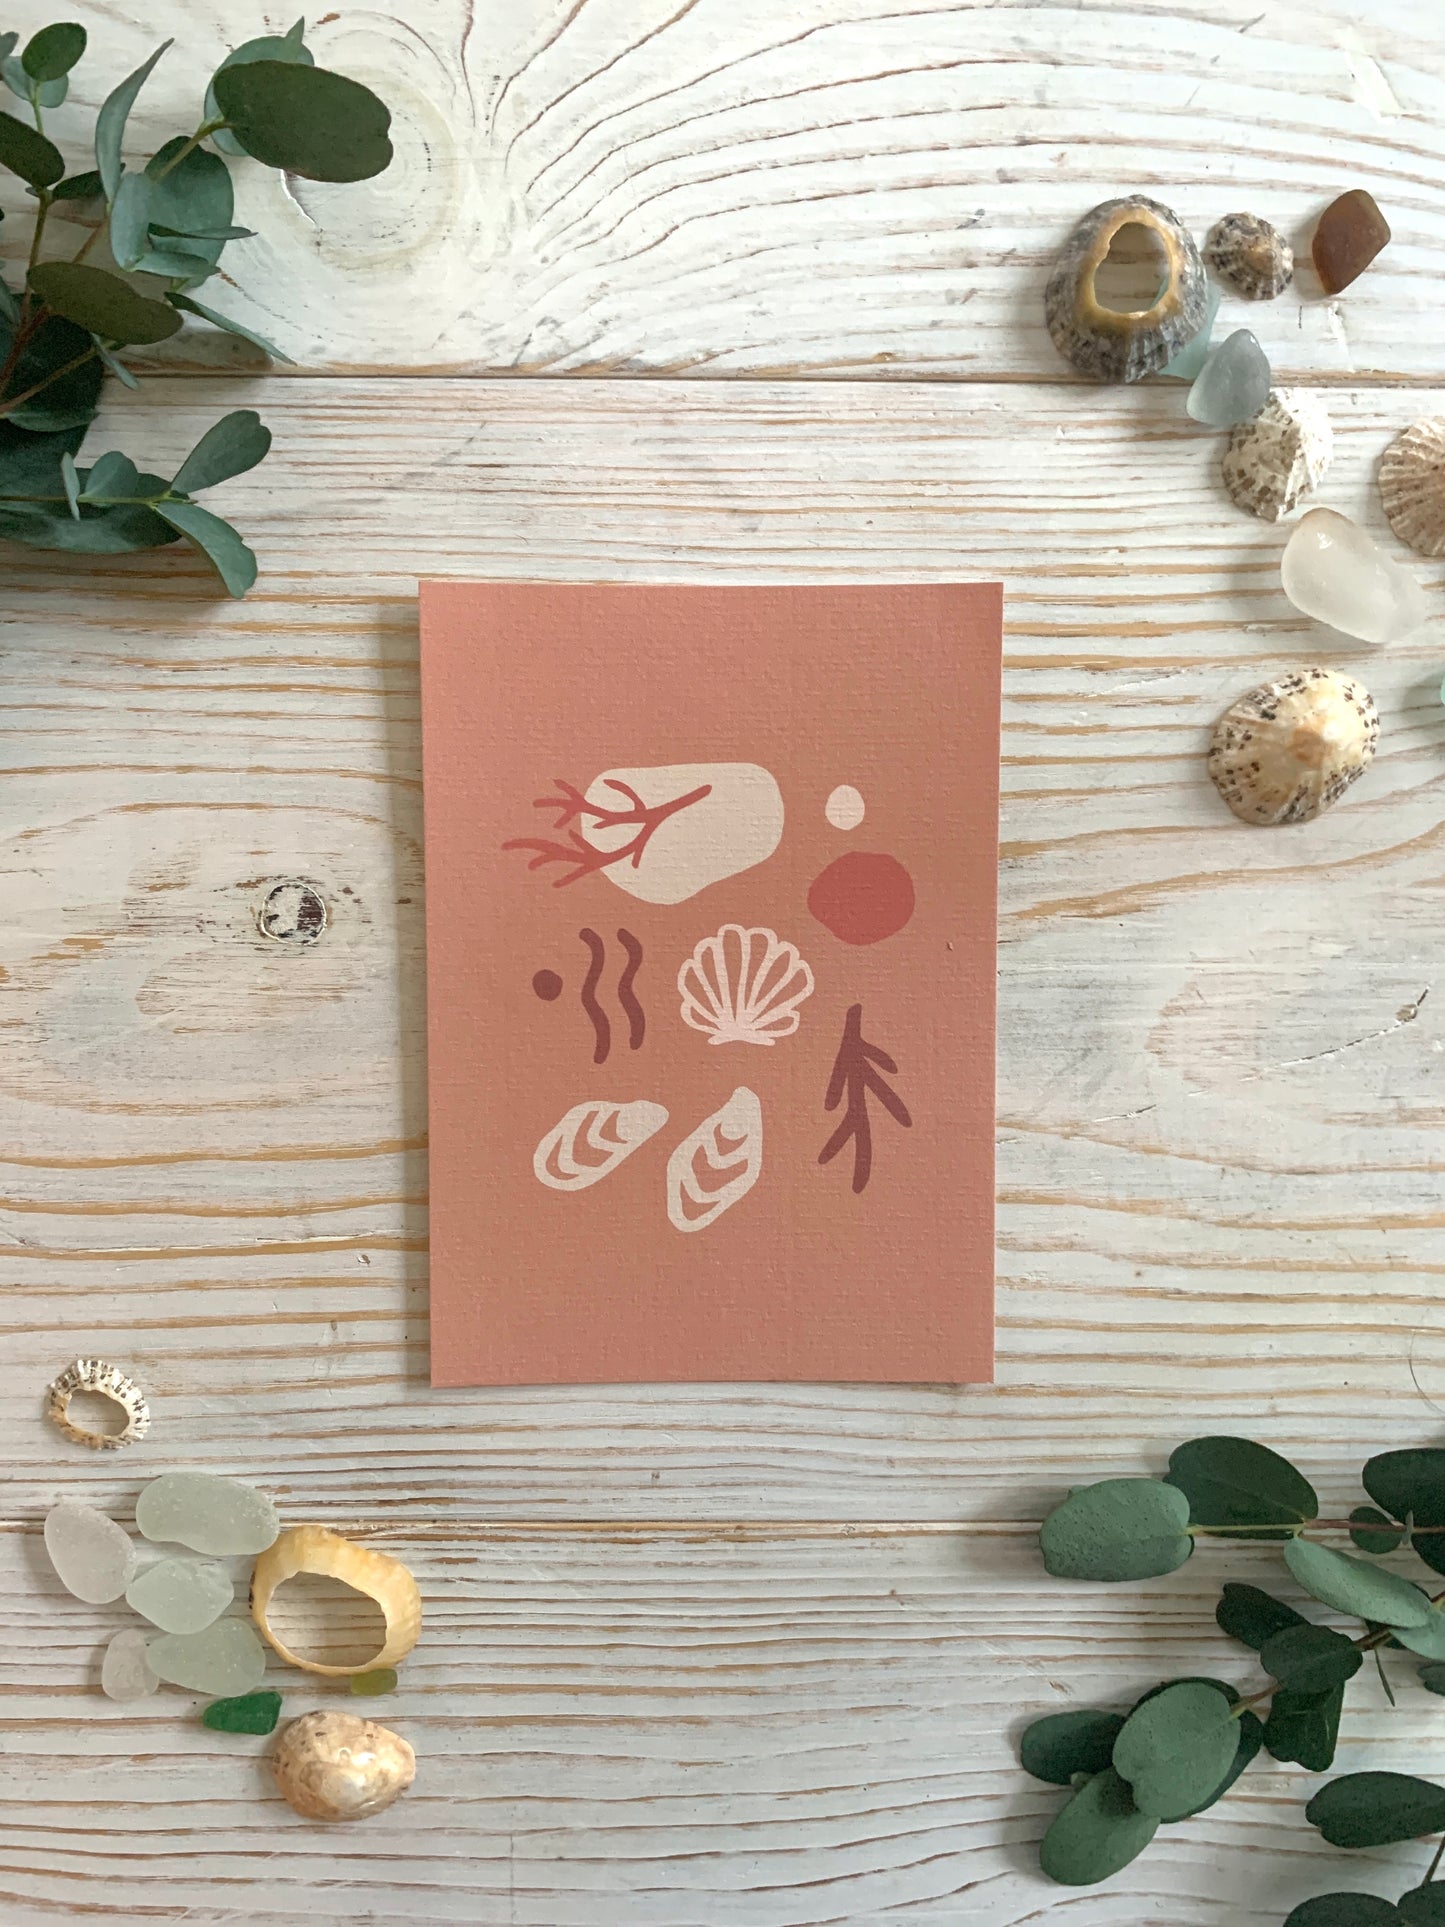 seaweed and shells art postcard